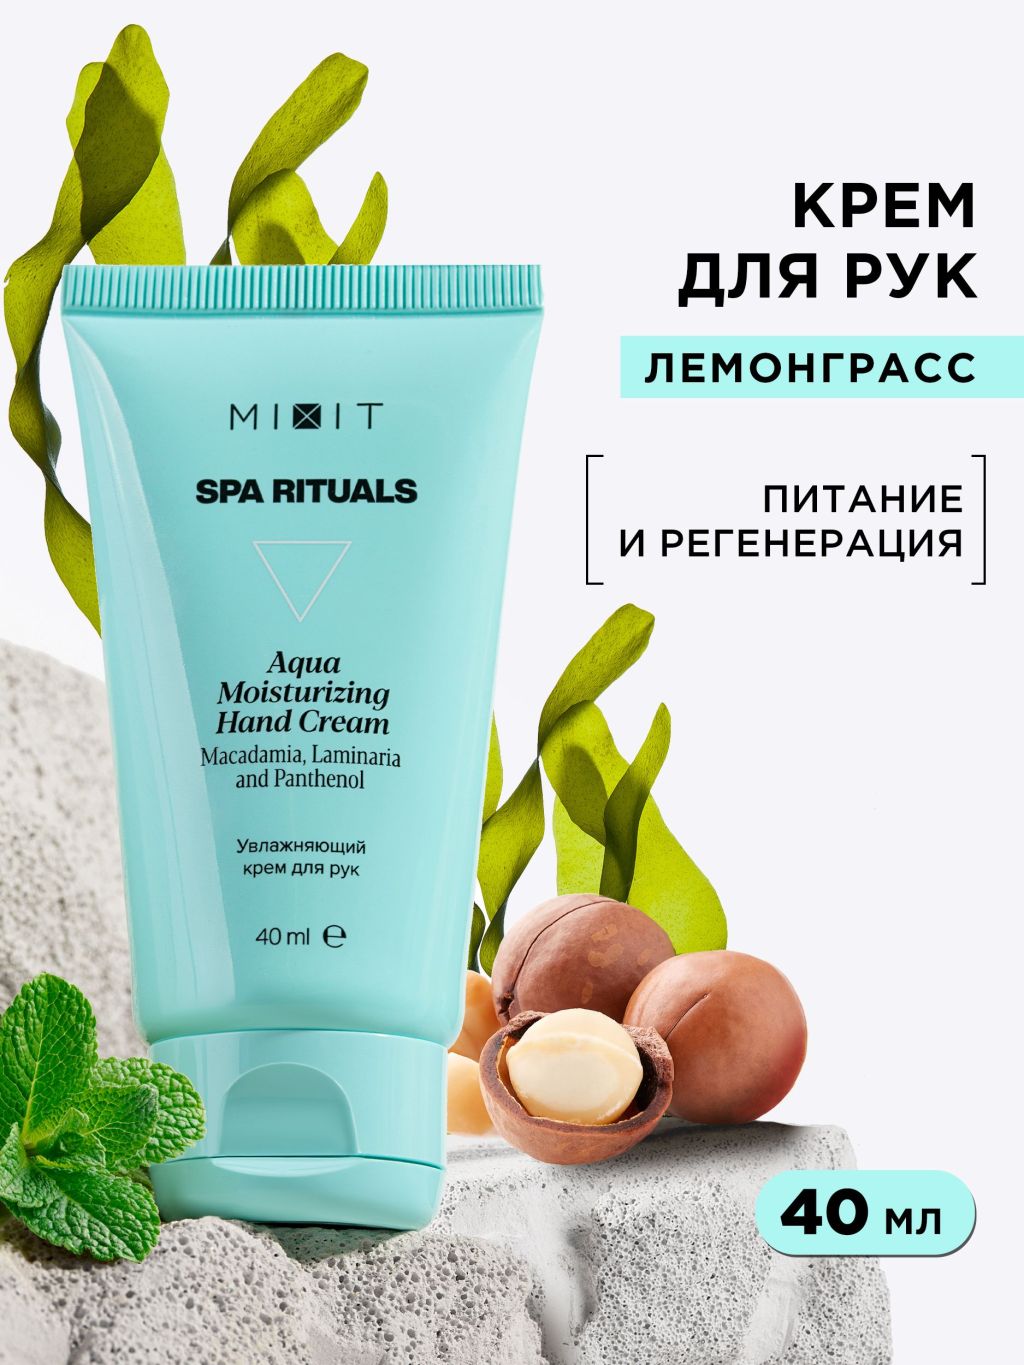 Крем для рук MIXIT Spa Rituals Aqua Moisturizing Hand Cream увлажняющий, 40 мл